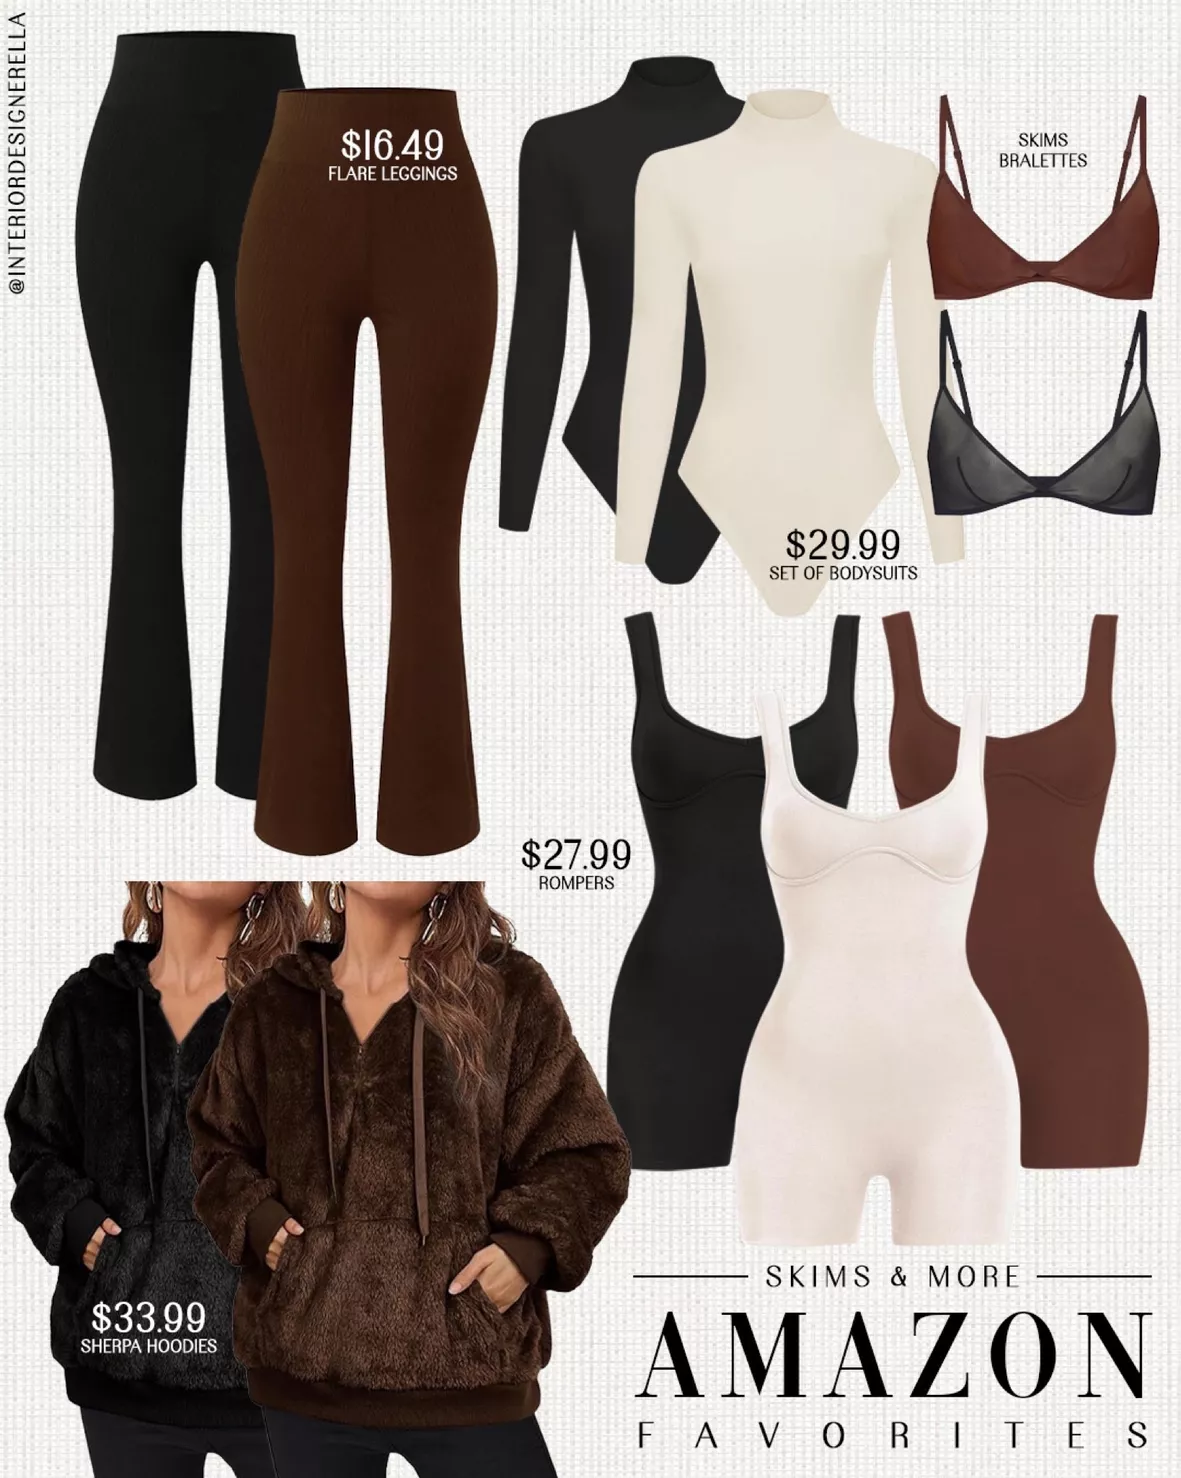  JELYSPET 3 Pack Long Sleeve Bodysuits for Women - Mock